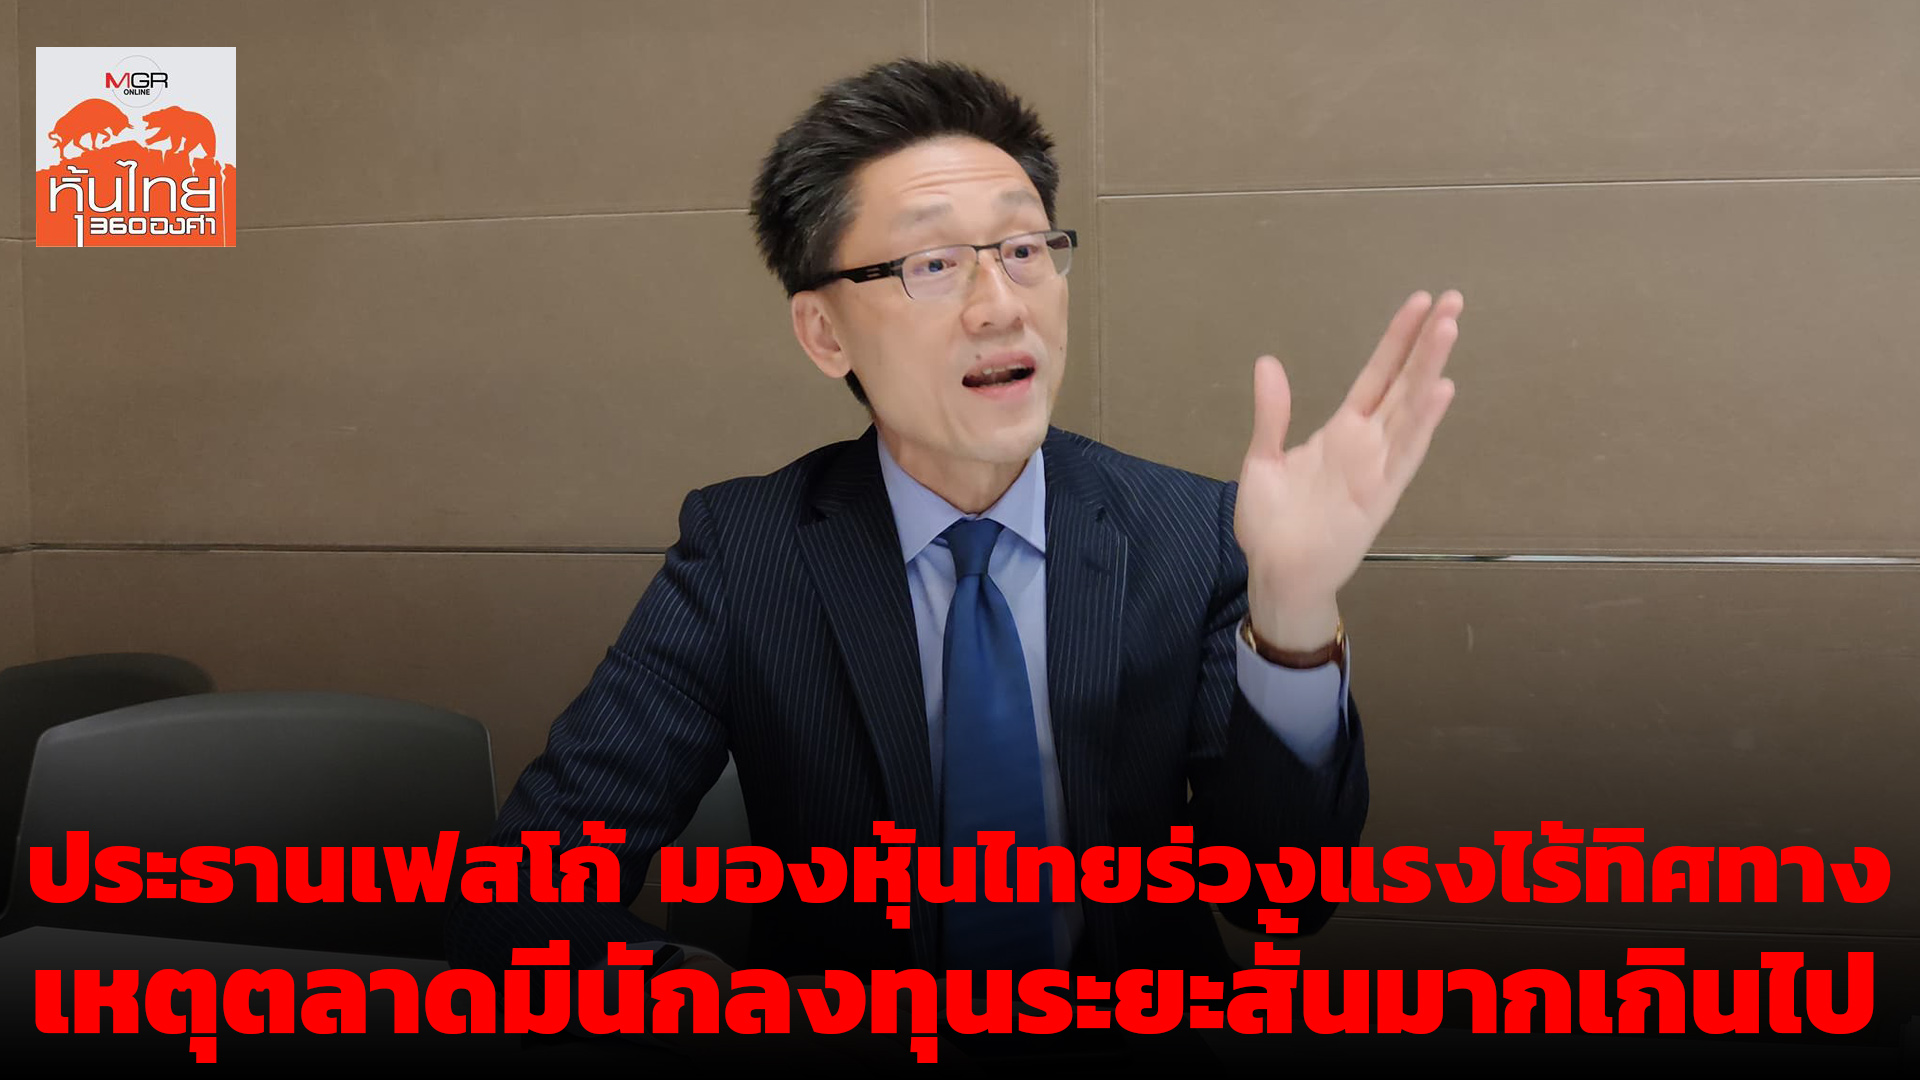 (รับชมคลิป) ประธานเฟสโก้ มองหุ้นไทยร่วงแรงไร้ทิศทาง เหตุตลาดมีนักลงทุนระยะสั้นมากเกินไป